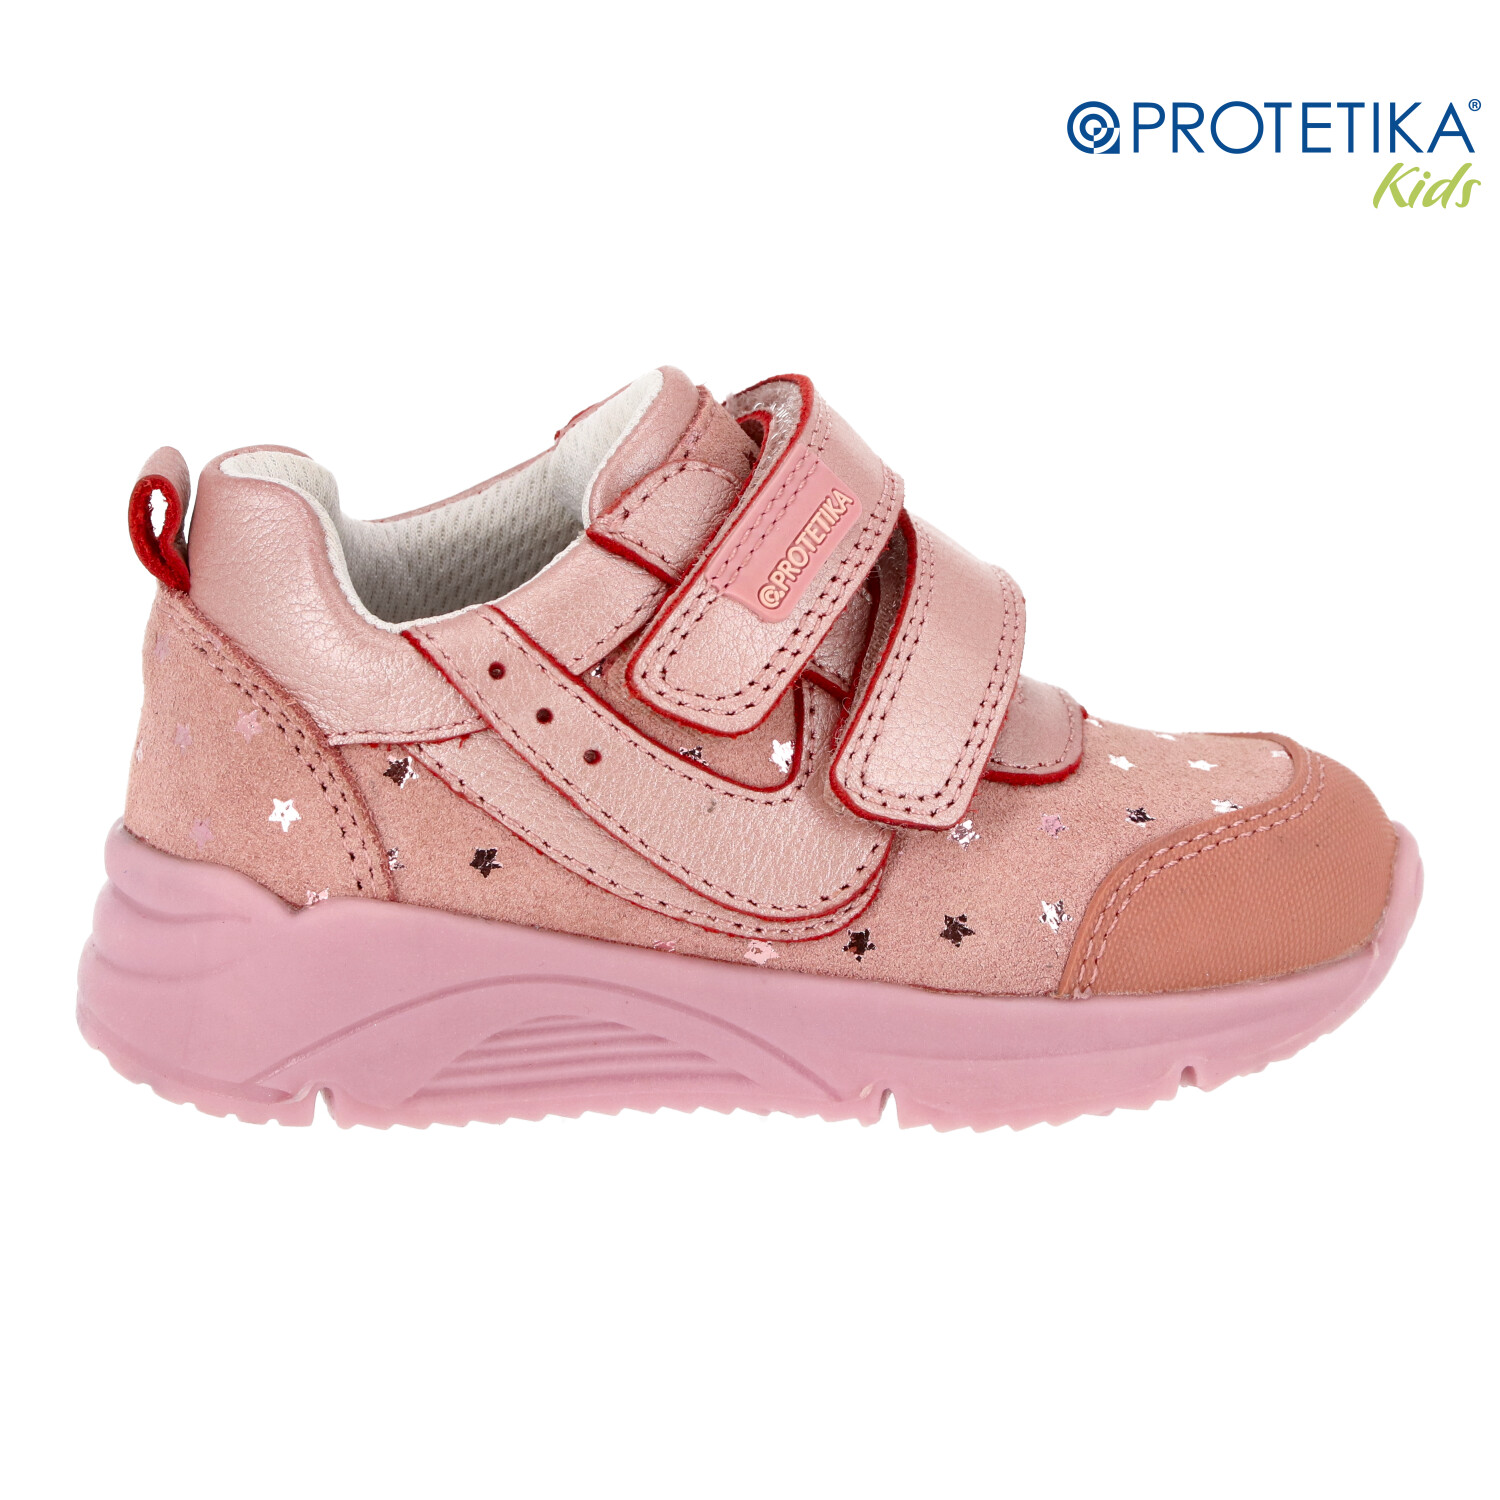 Protetika - topánky EMILY pink